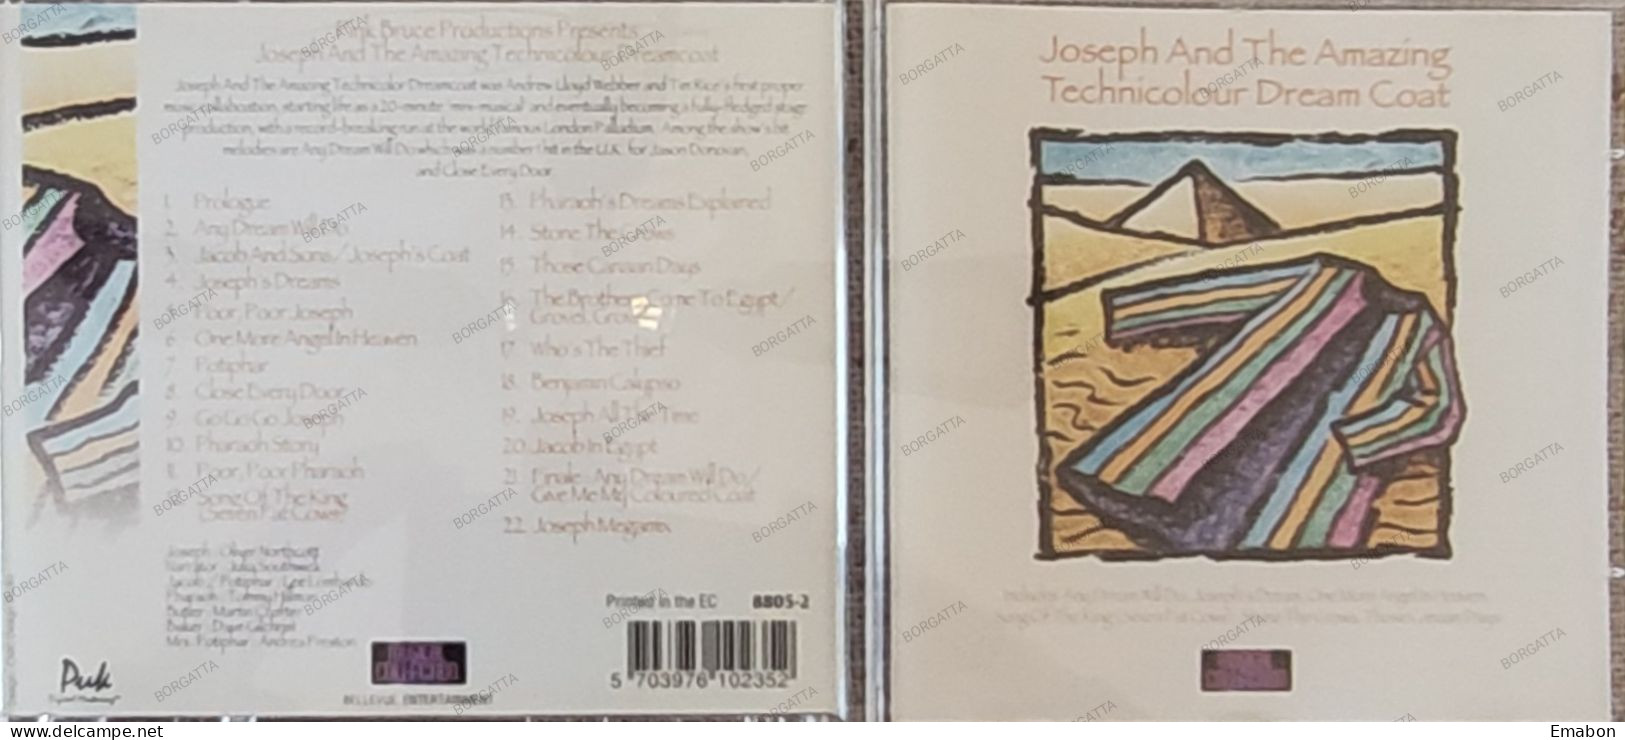 BORGATTA - FILM MUSIC - Cd JOSEPH AND THE AMAZING TECHNICOLOR DREAMCOAT - BELLEVUE 1996 - USATO In Buono Stato - Musique De Films